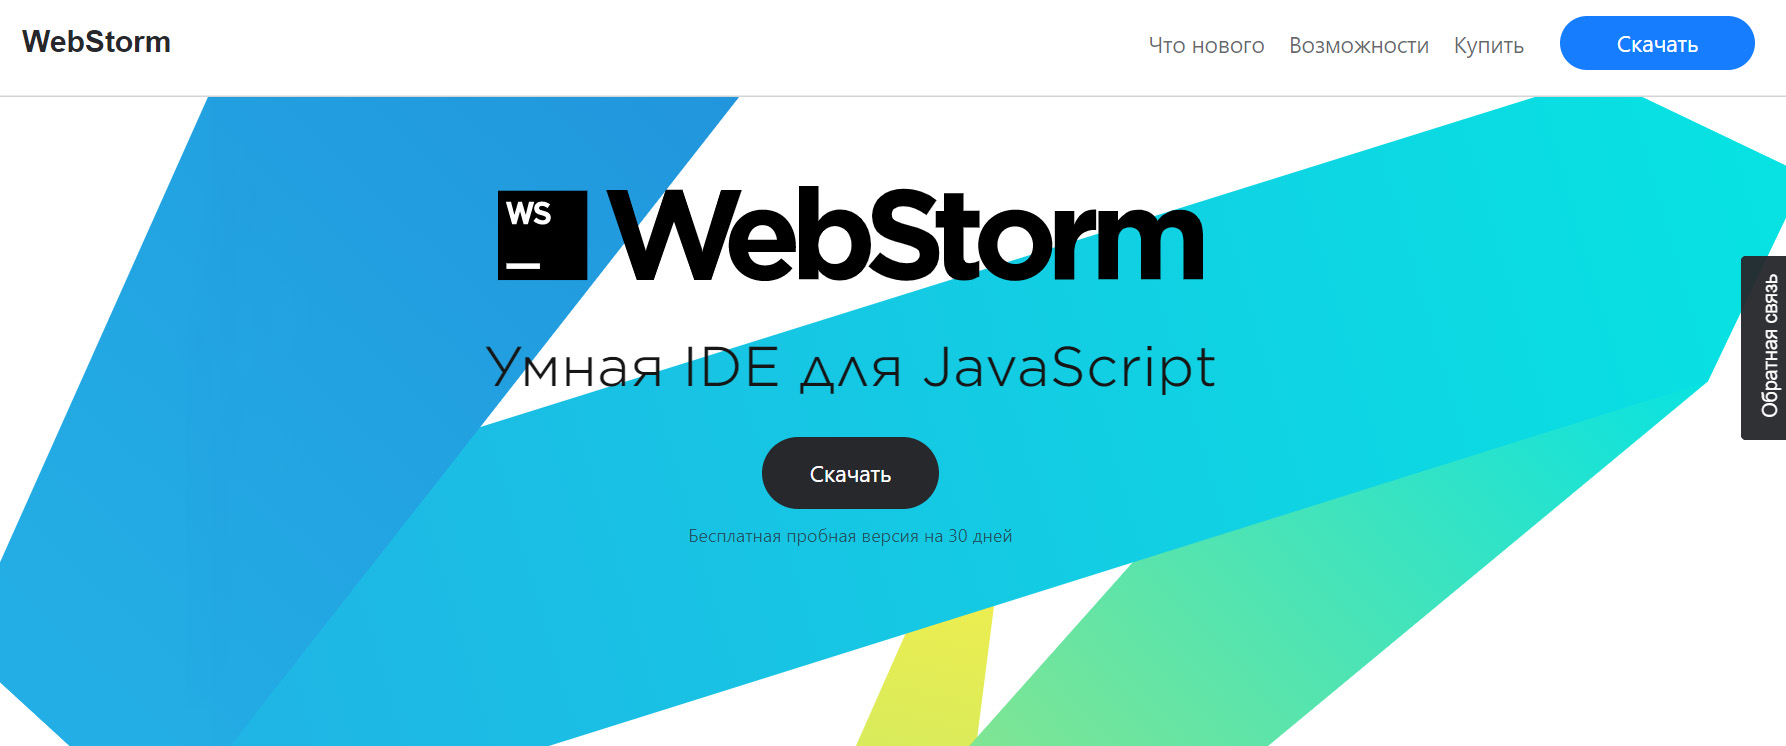 Топ инструментов профессионального разработчика: Webstorm